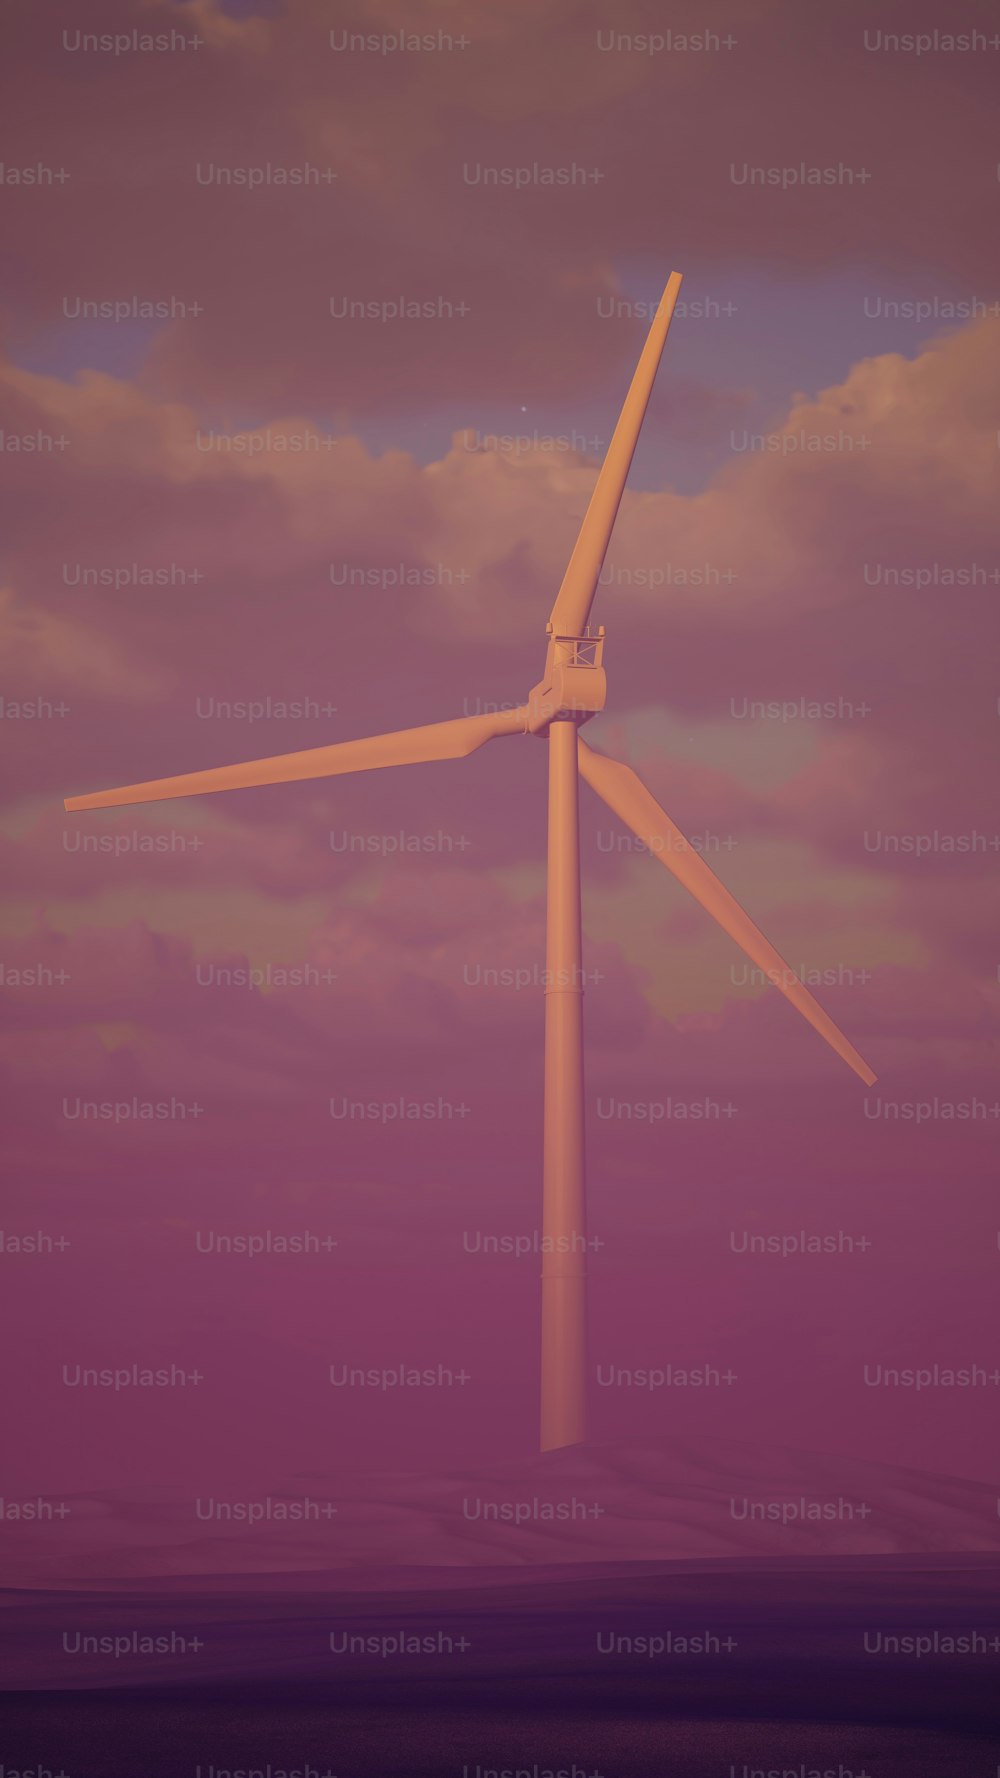 Eine Windkraftanlage mitten in einem violetten Himmel